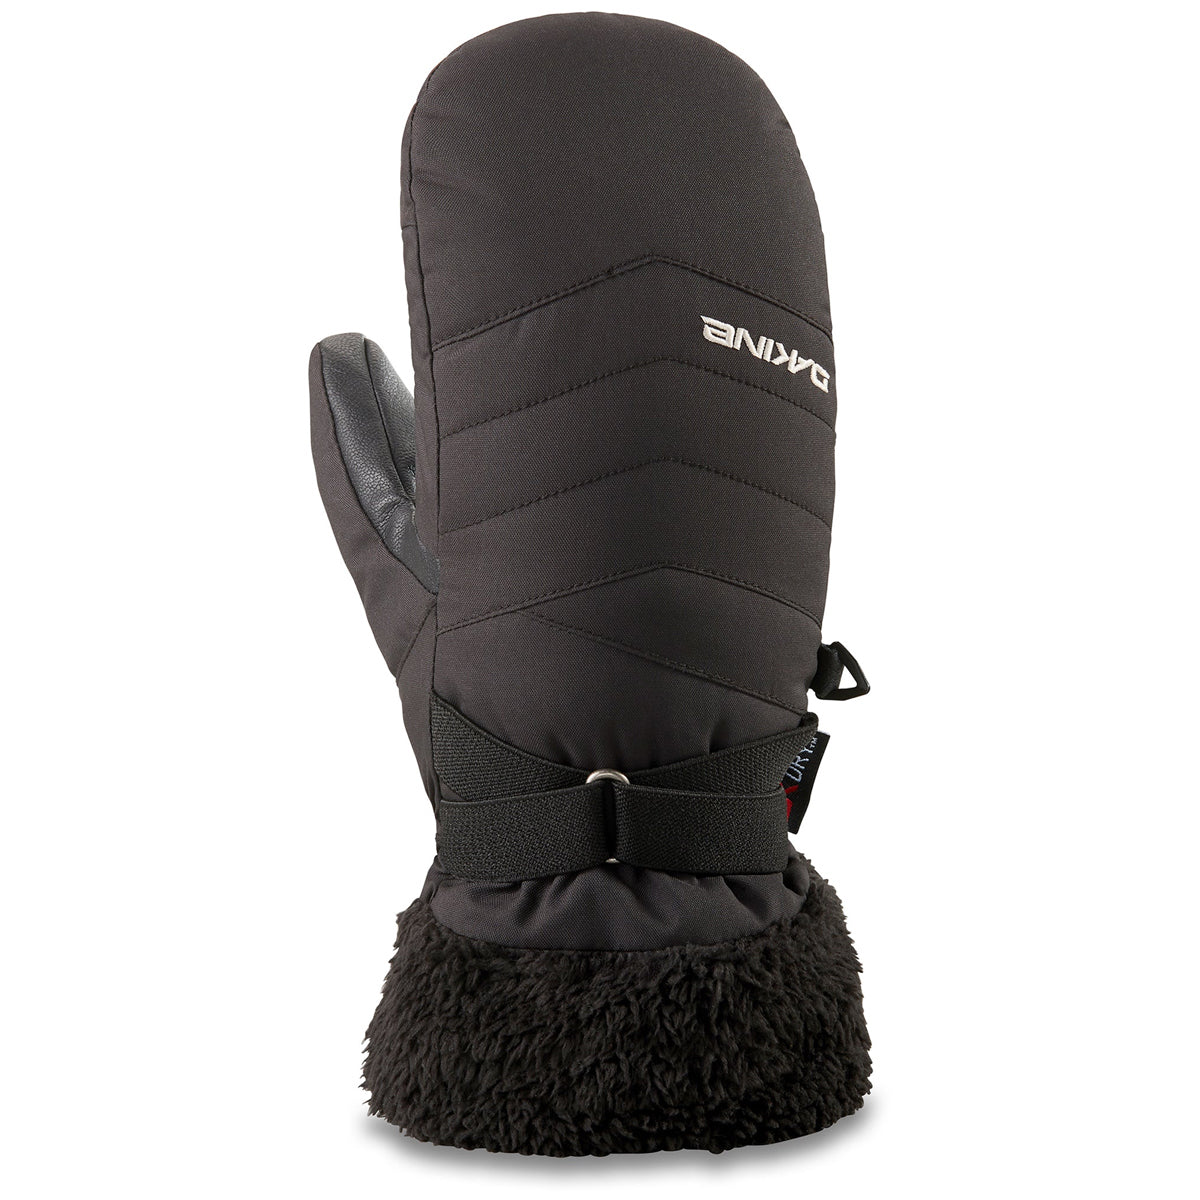 Dakine Alero Mitt Snowboard Gloves - Black image 1